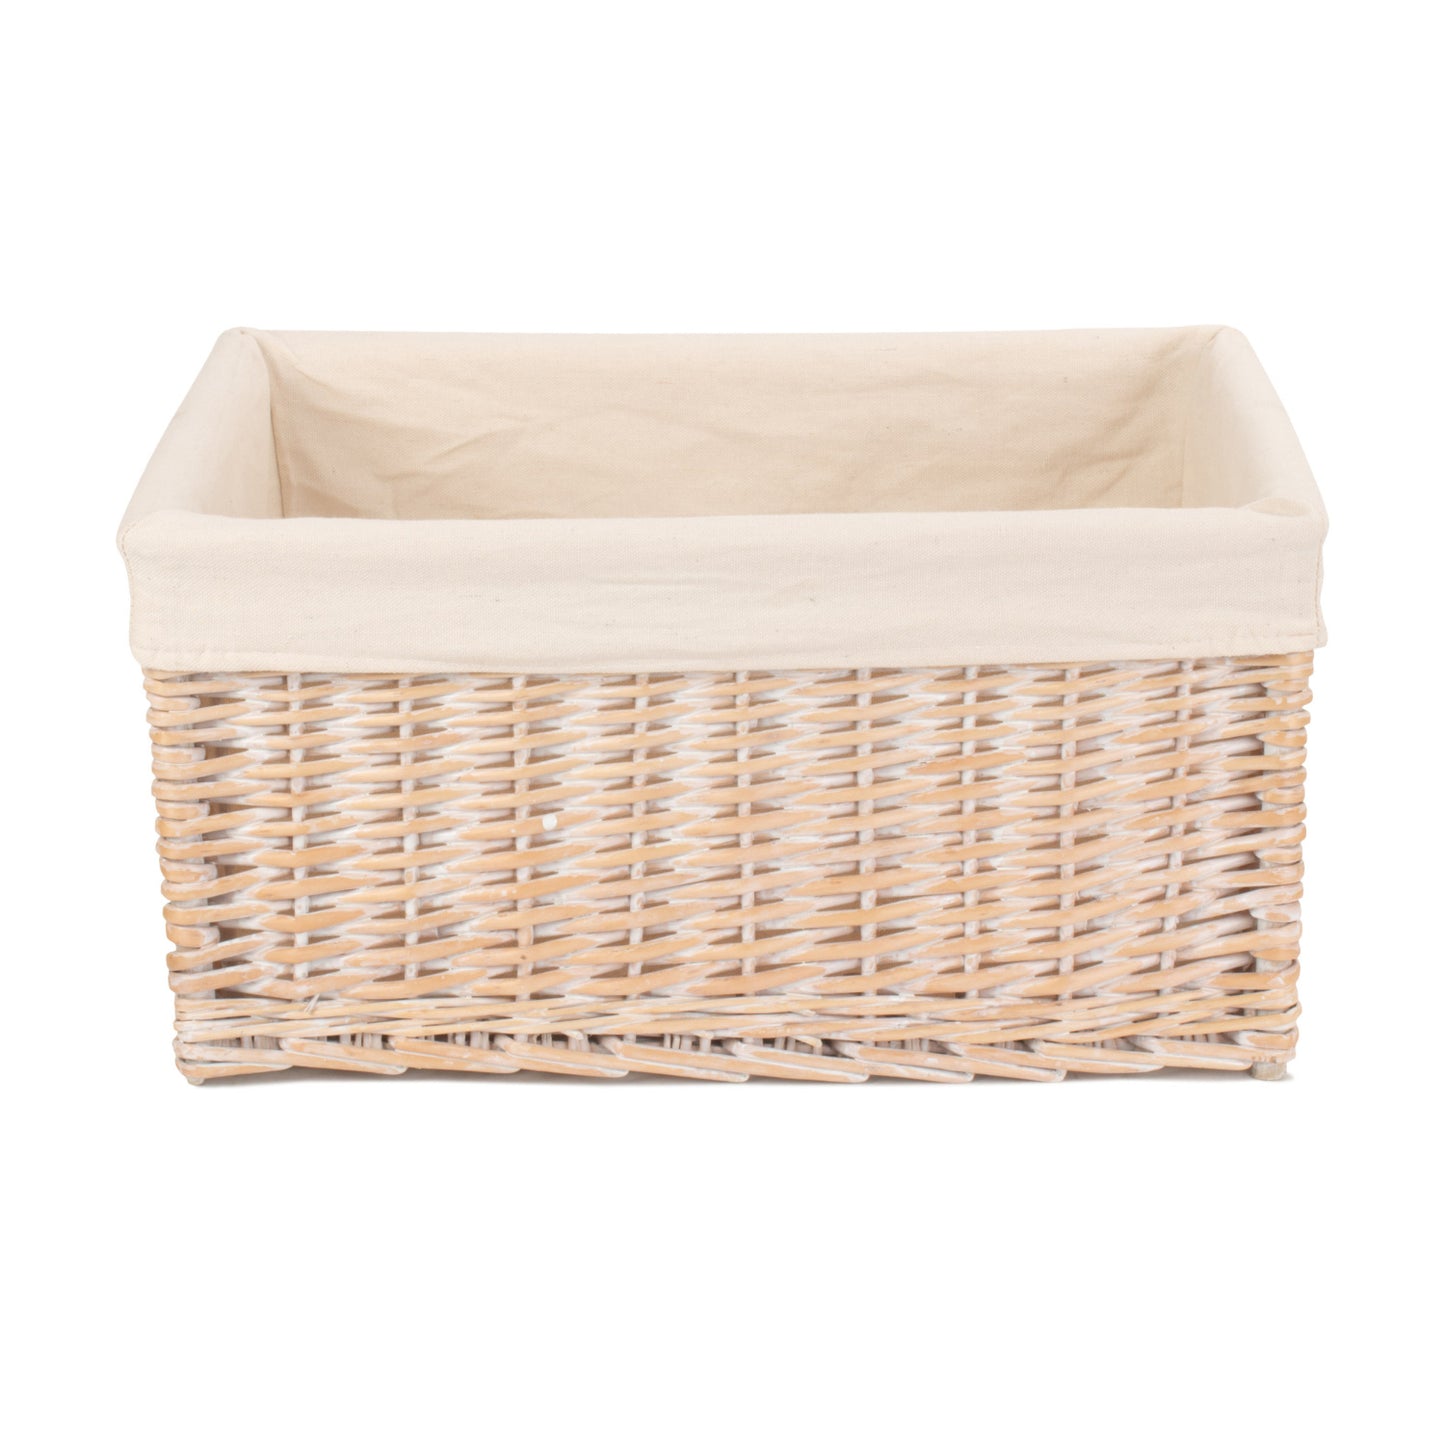 Extra Large White Wash Storage Basket With White Lining